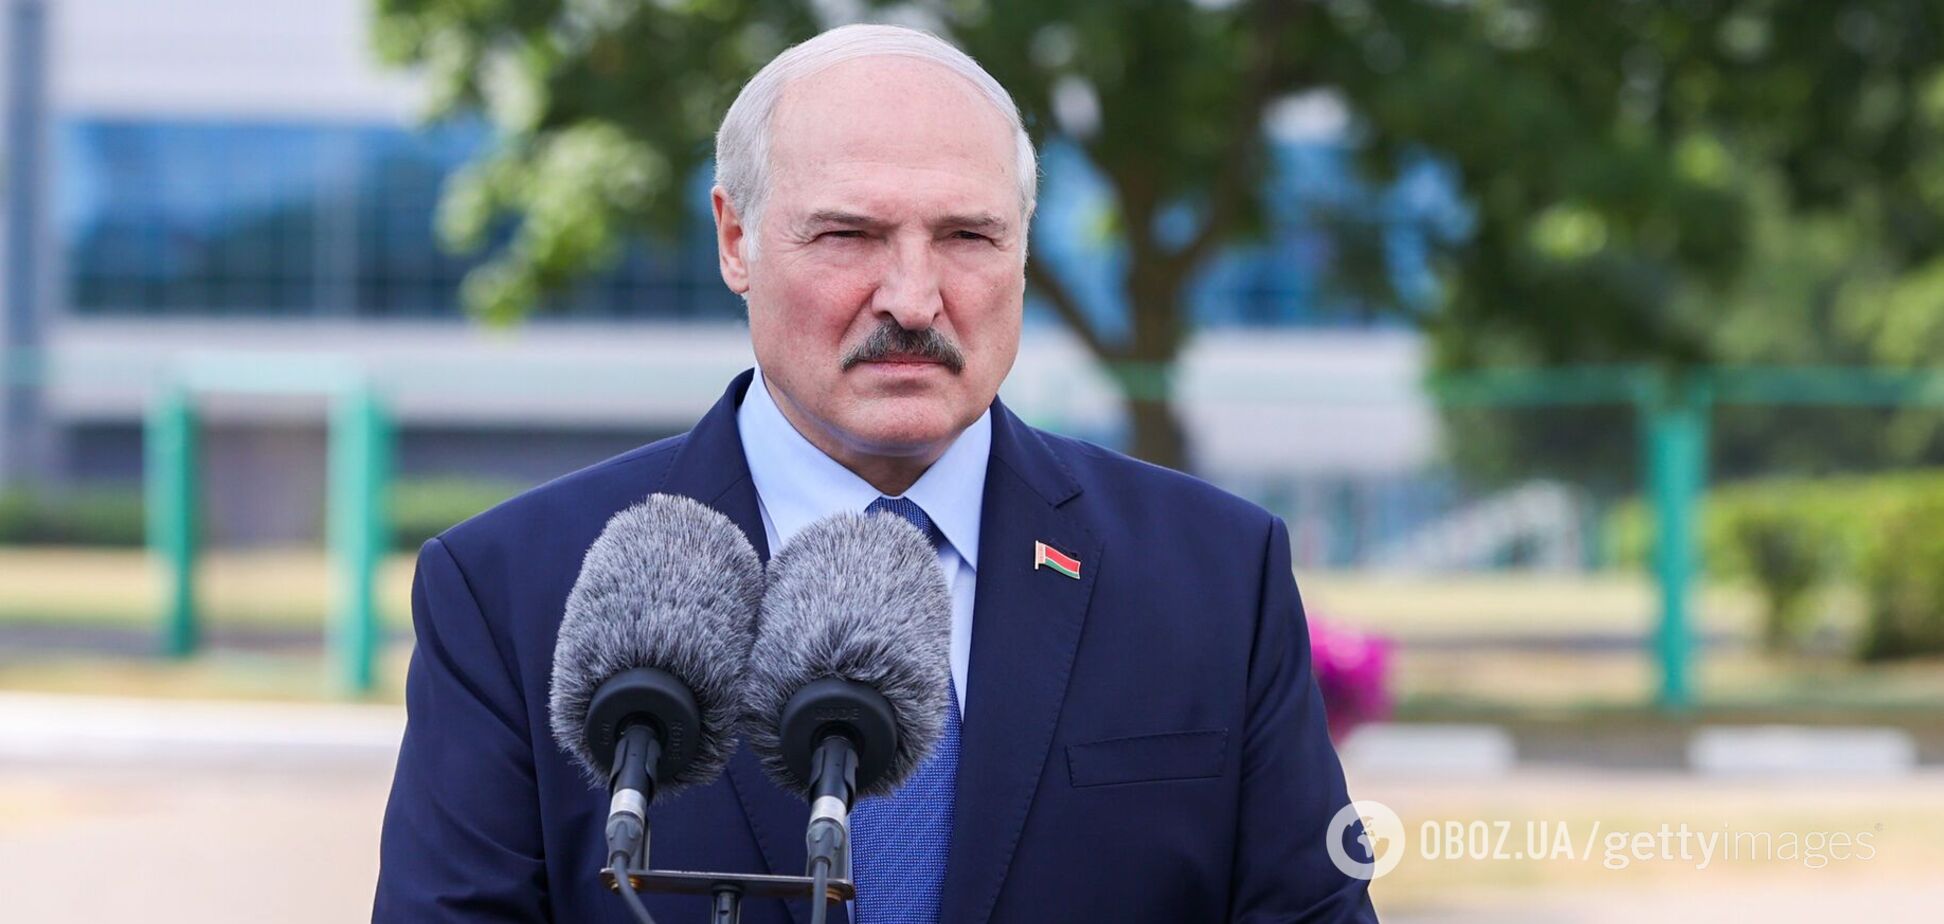 Олександр Лукашенко обізвав протестувальників вівцями